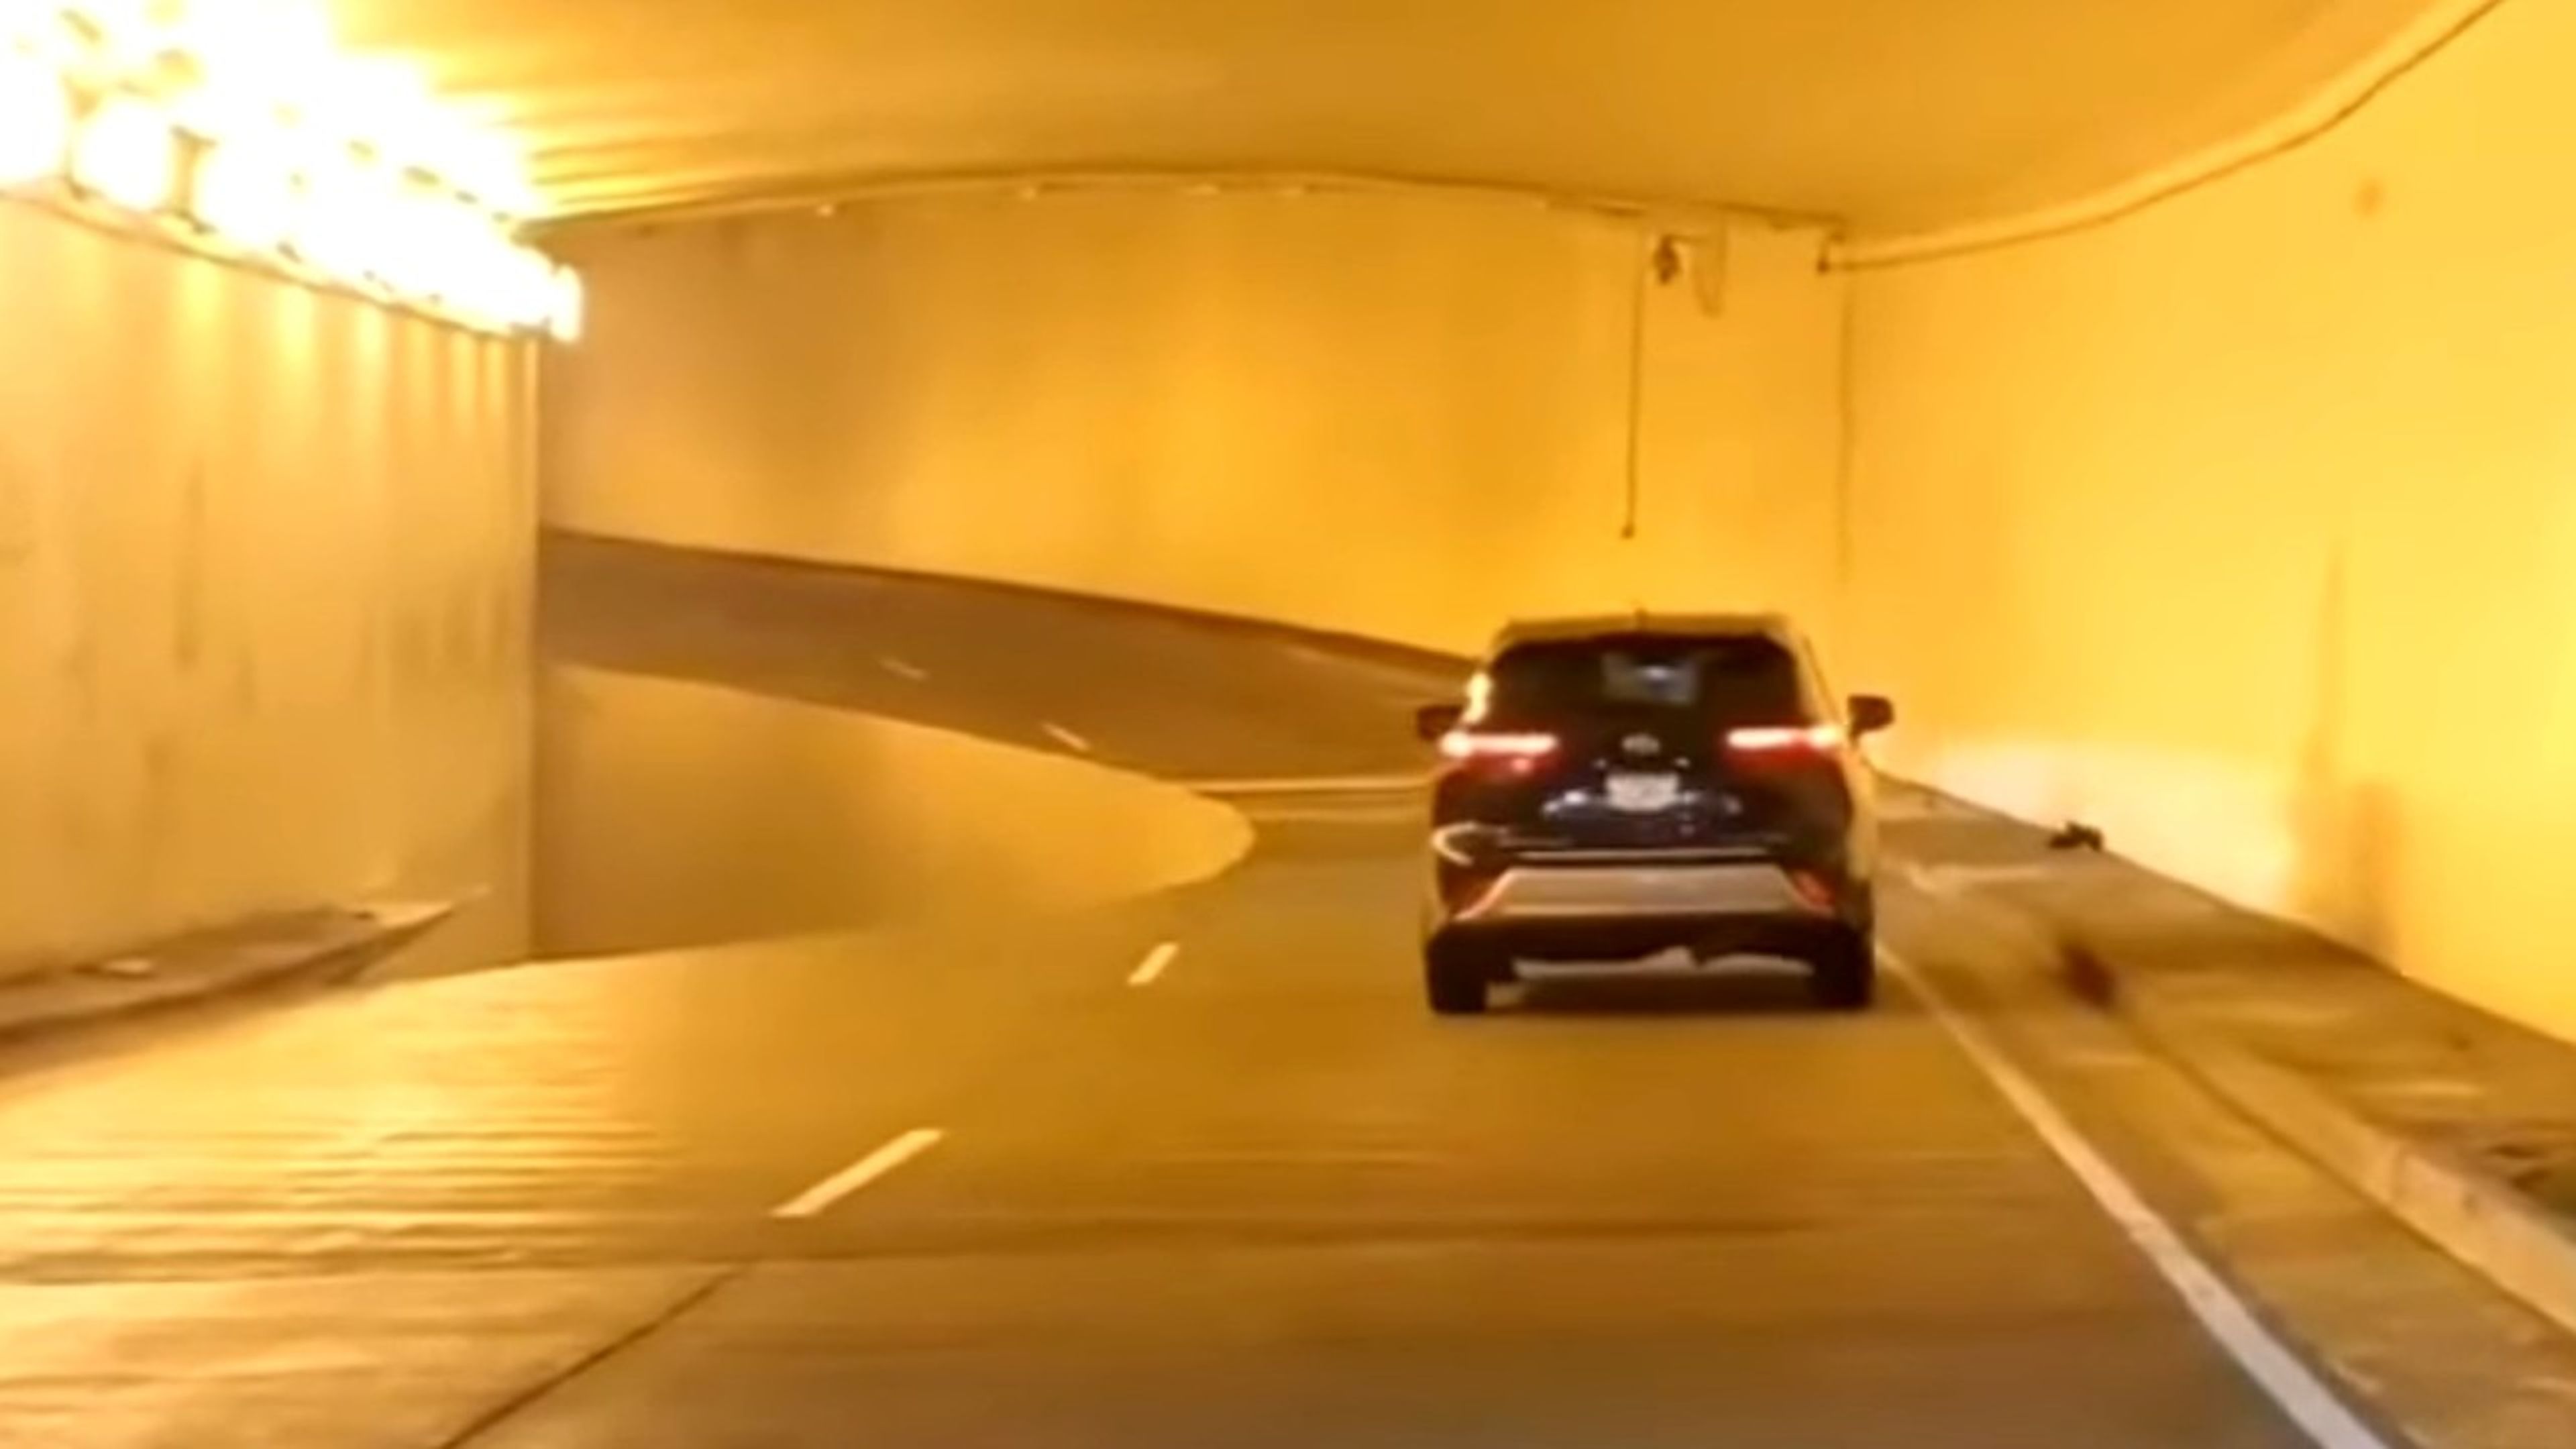 ilusion optica tunel